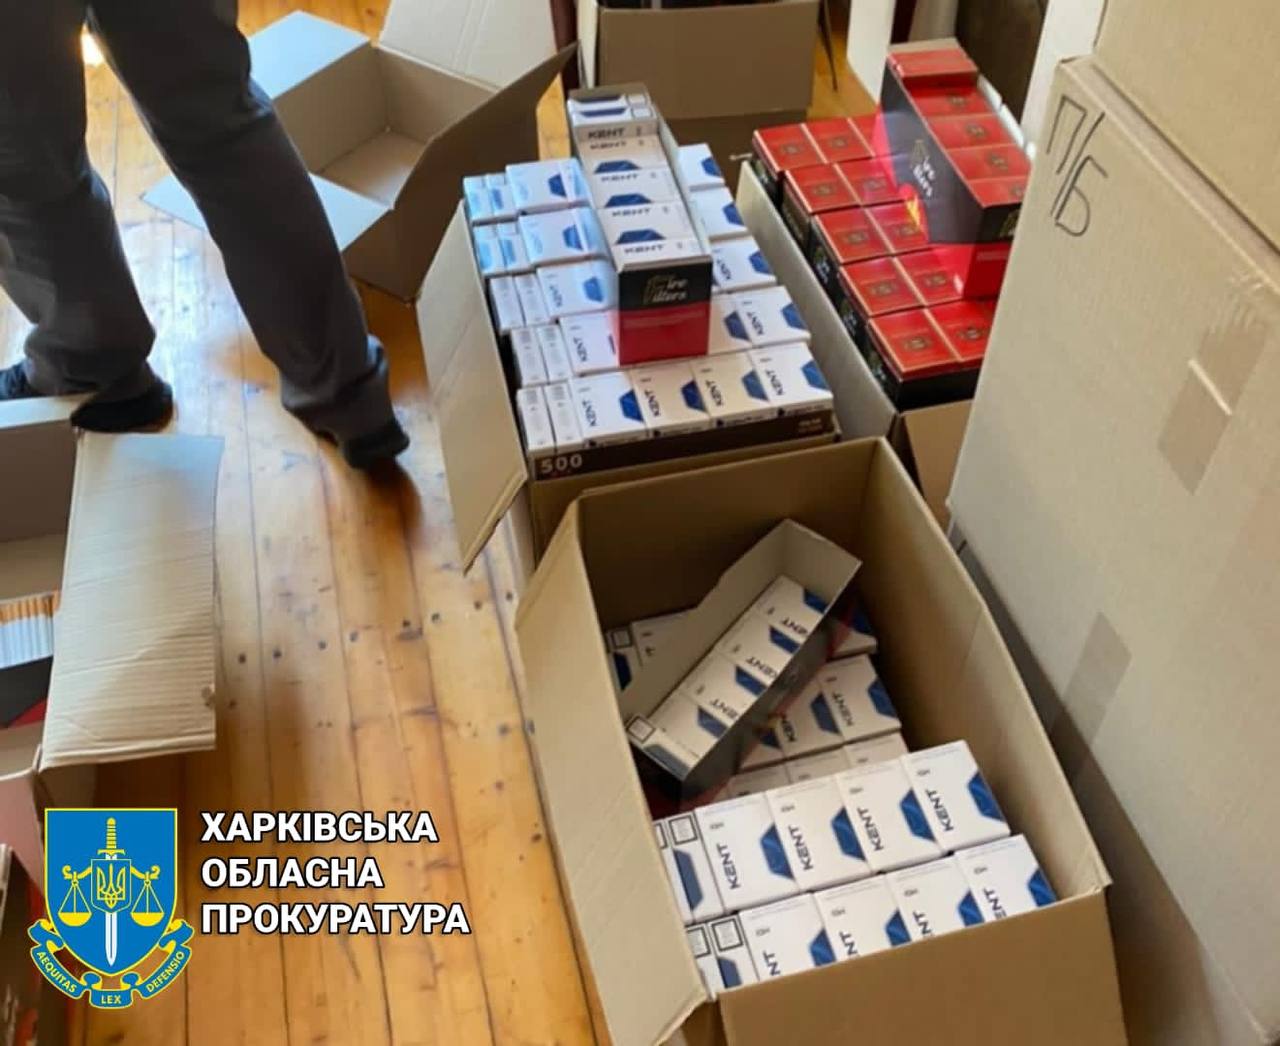 В Харькове делали и продавали поддельные сигареты